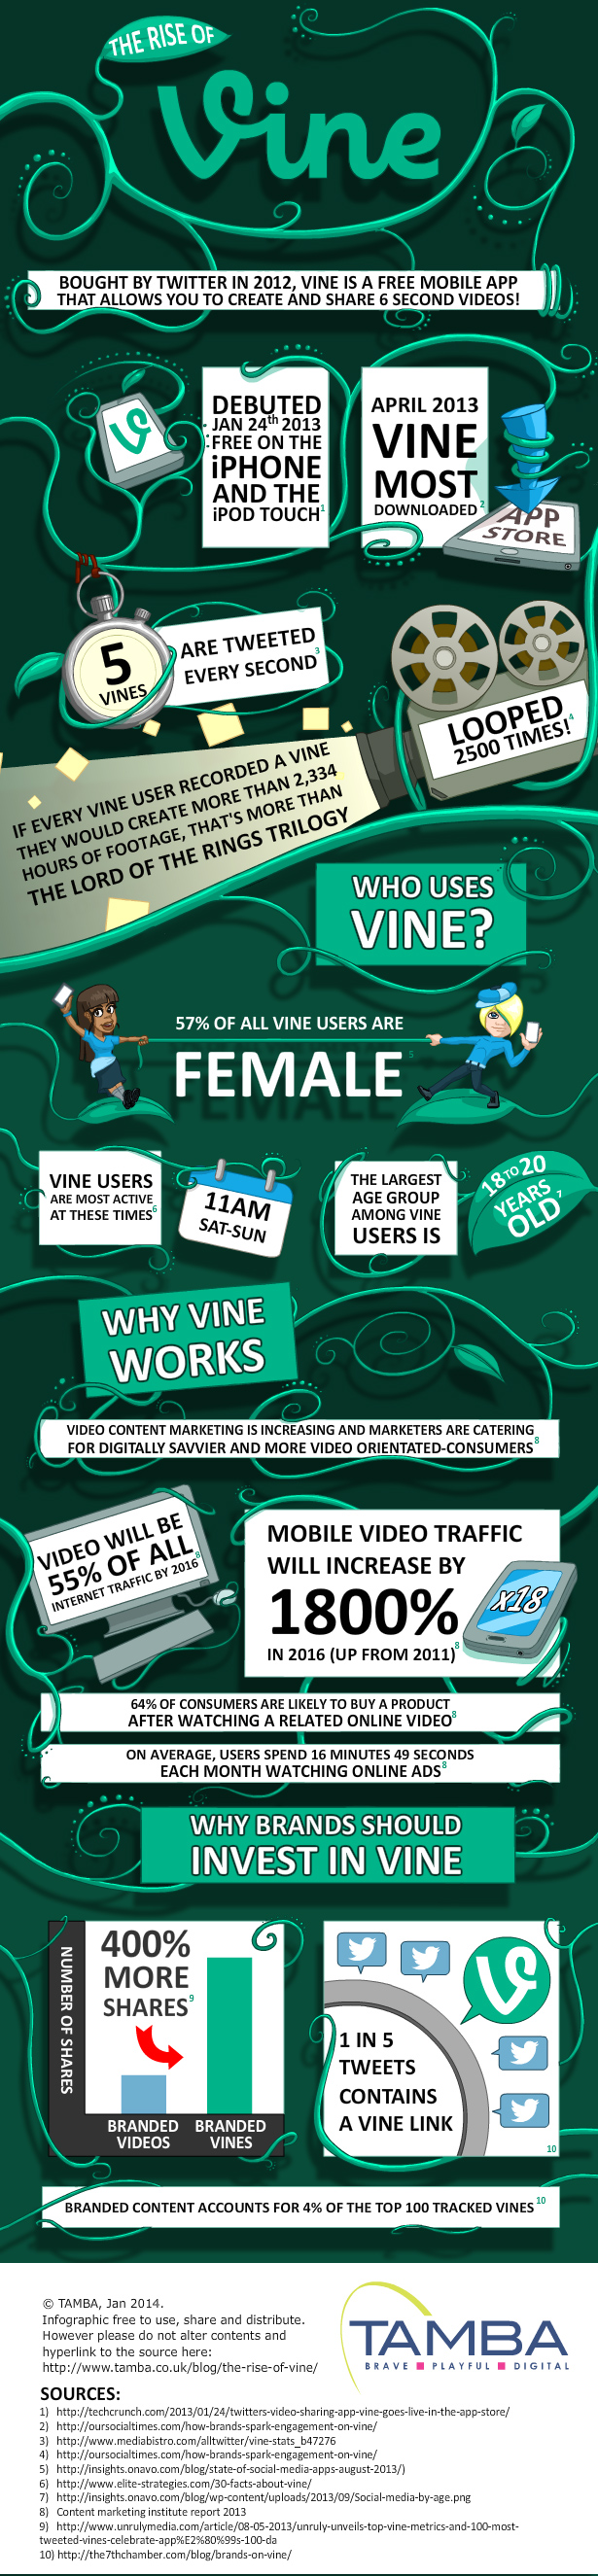 infographic-rise-of-vine-tamba